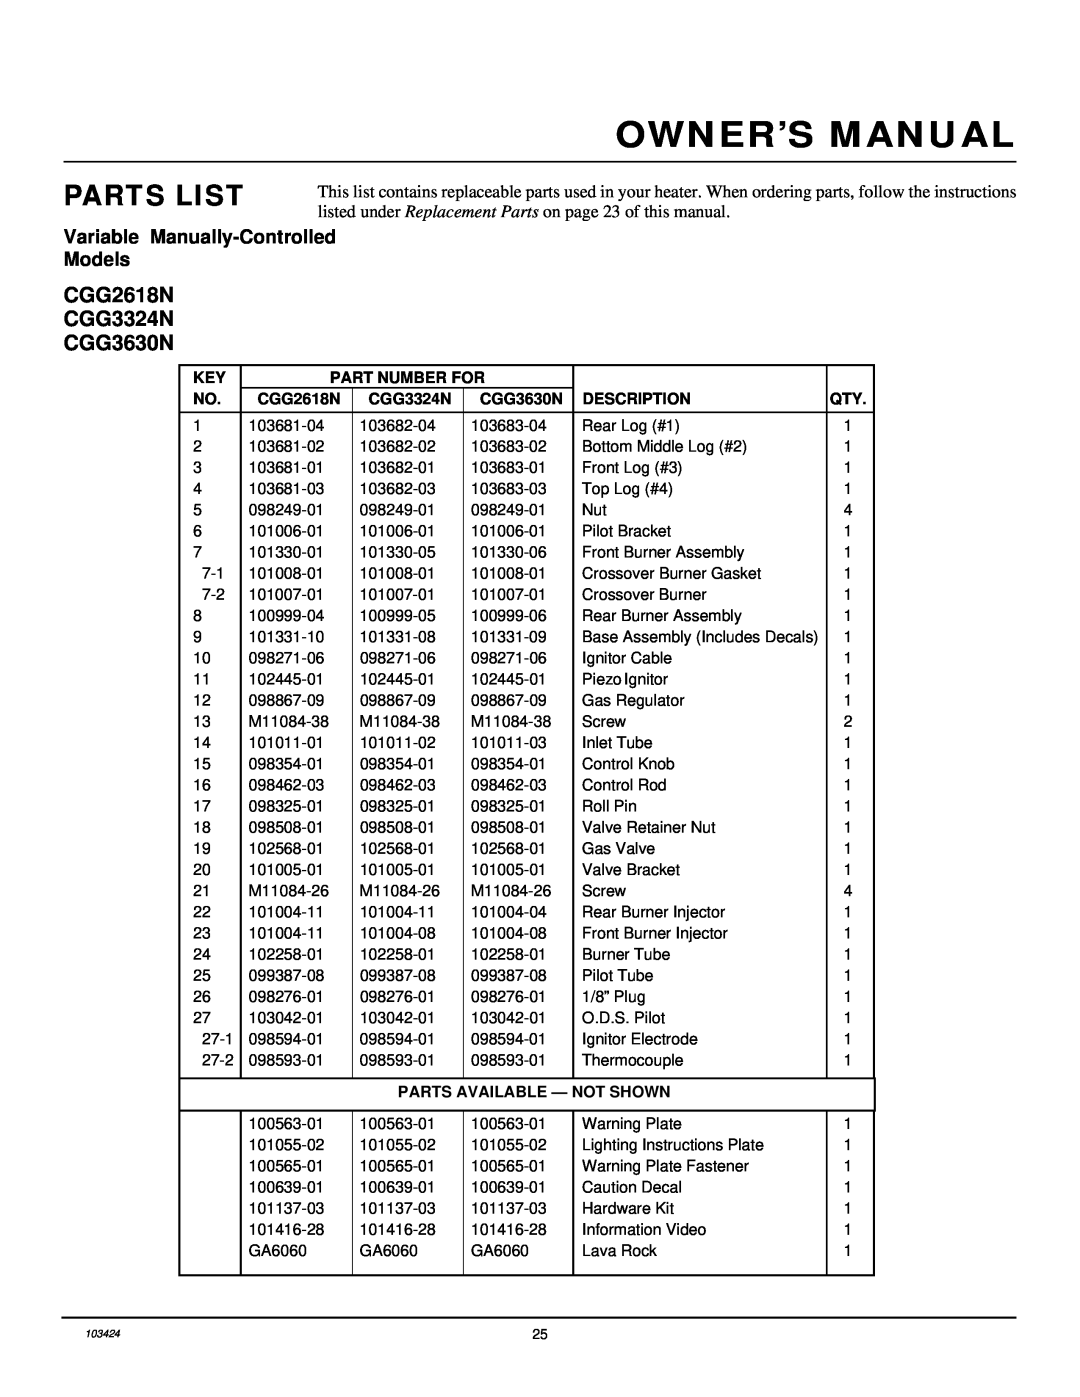 Desa CGG3324N(T) Parts List, CGG2618N CGG3324N CGG3630N, Part Number For, Description, Parts Available - Not Shown 